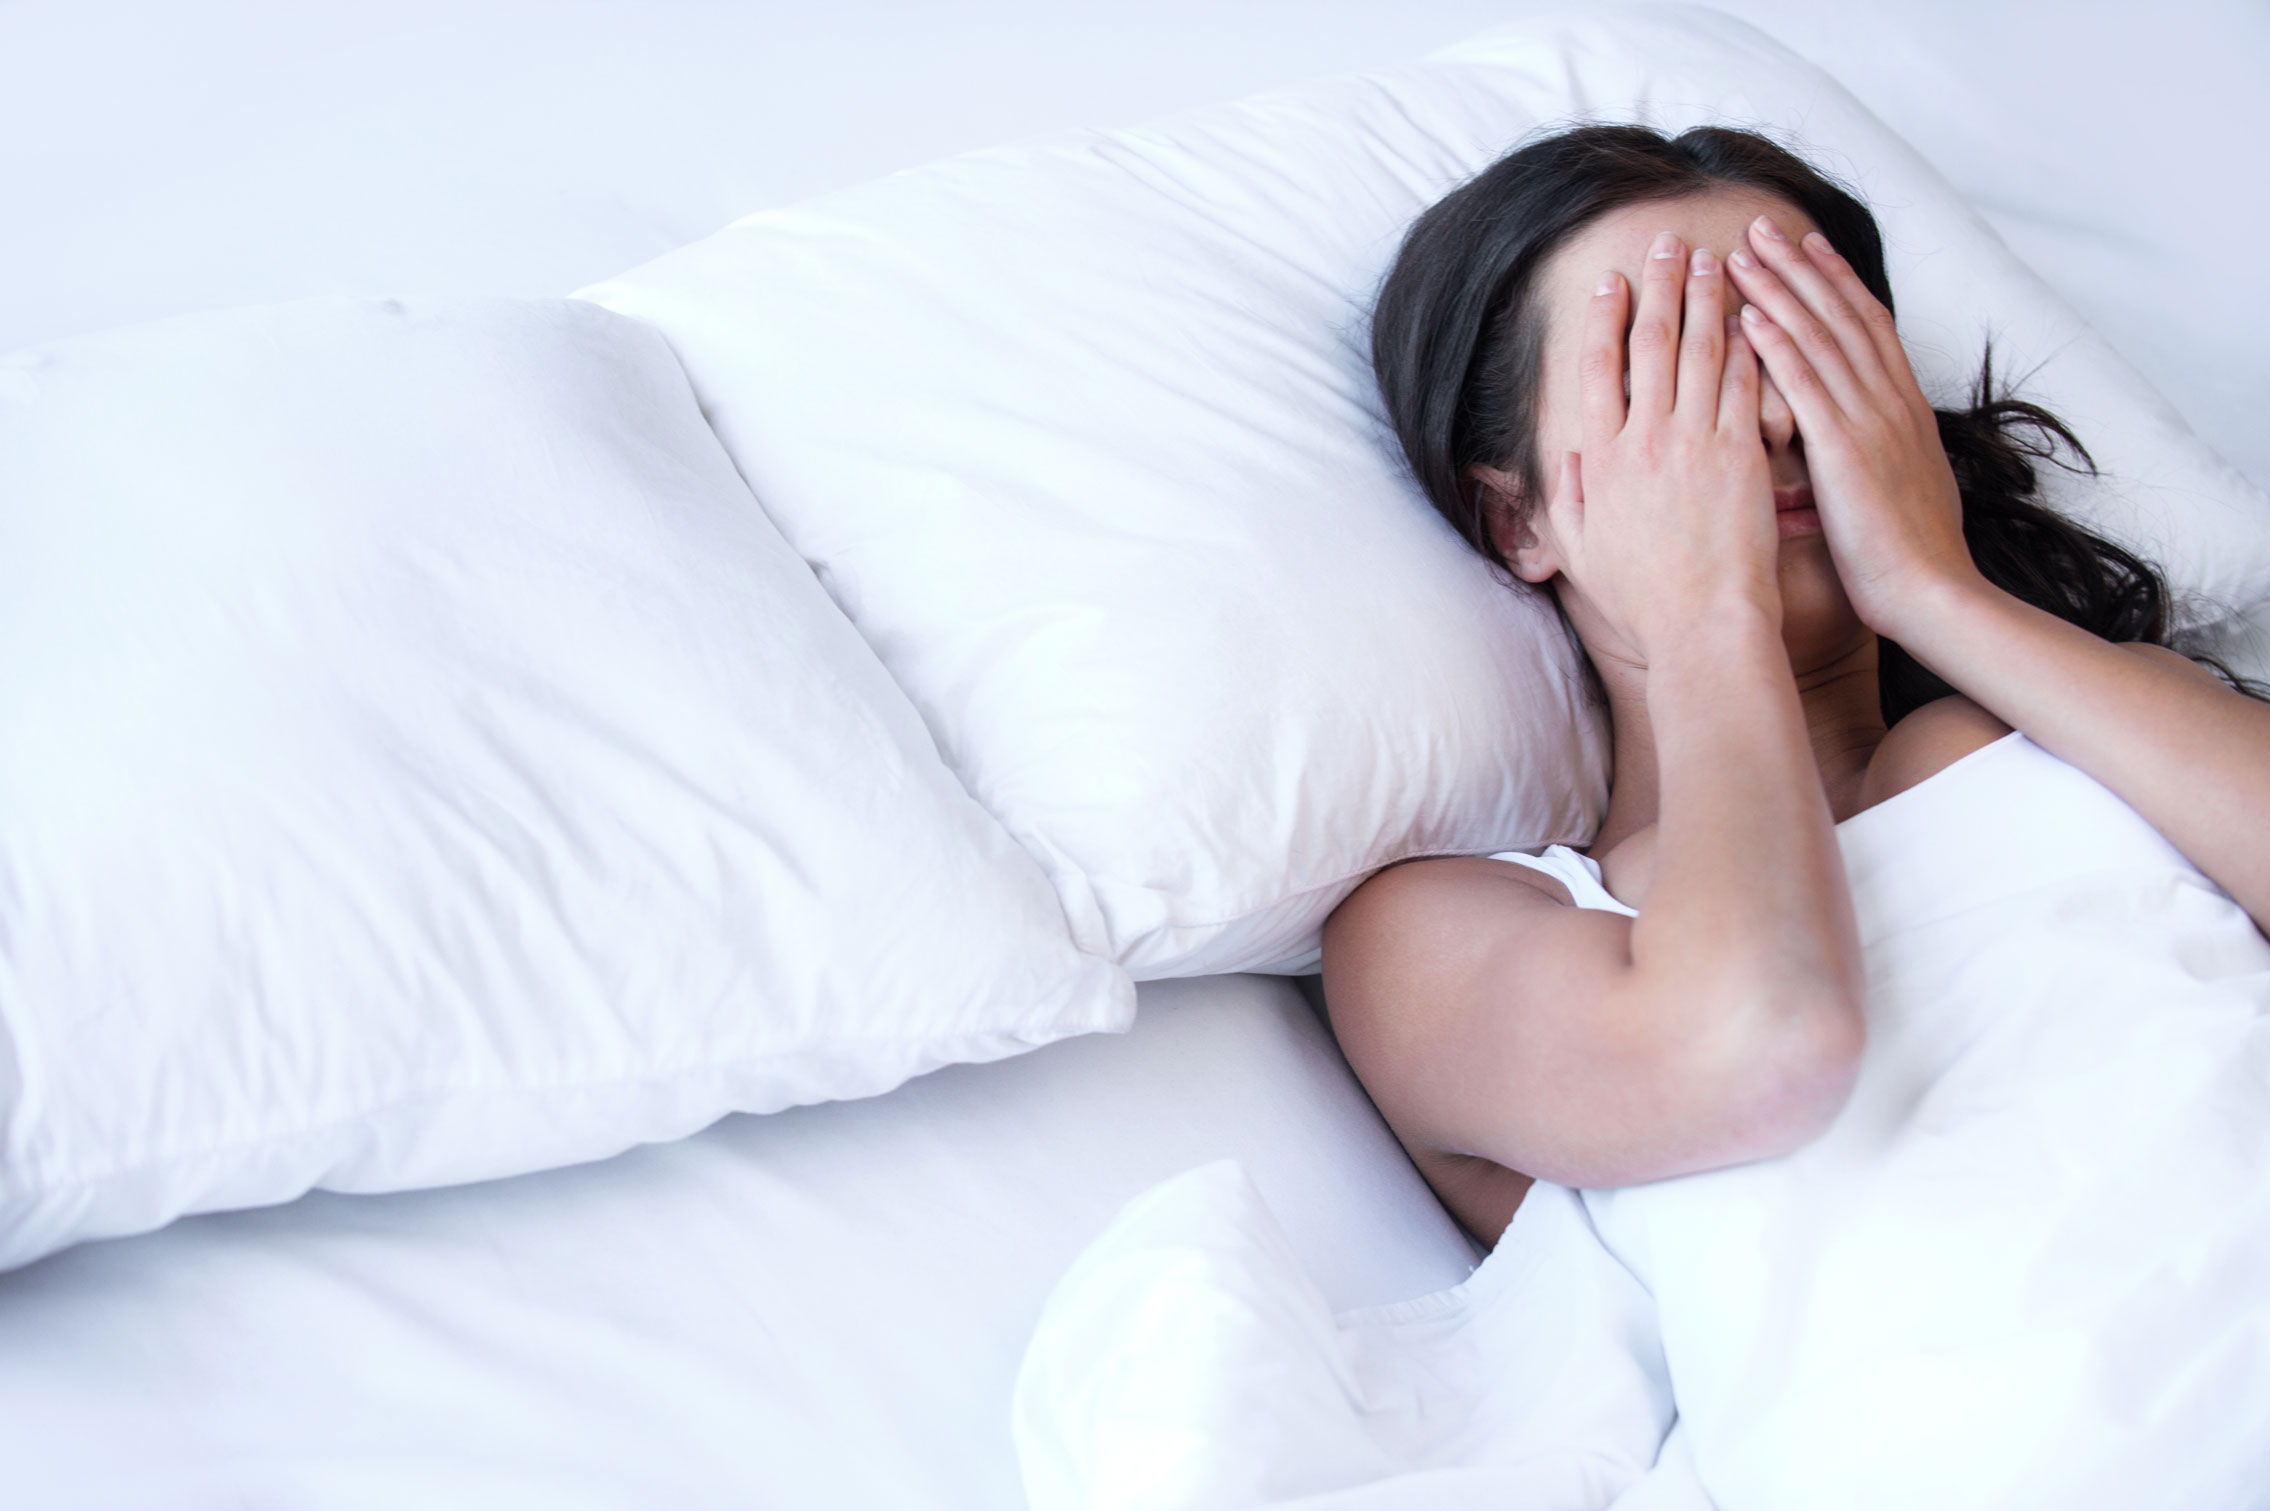 რატომ სჭირდება ზოგიერთ ადამიანს სხვებთან შედარებით უფრო მეტი ძილი?